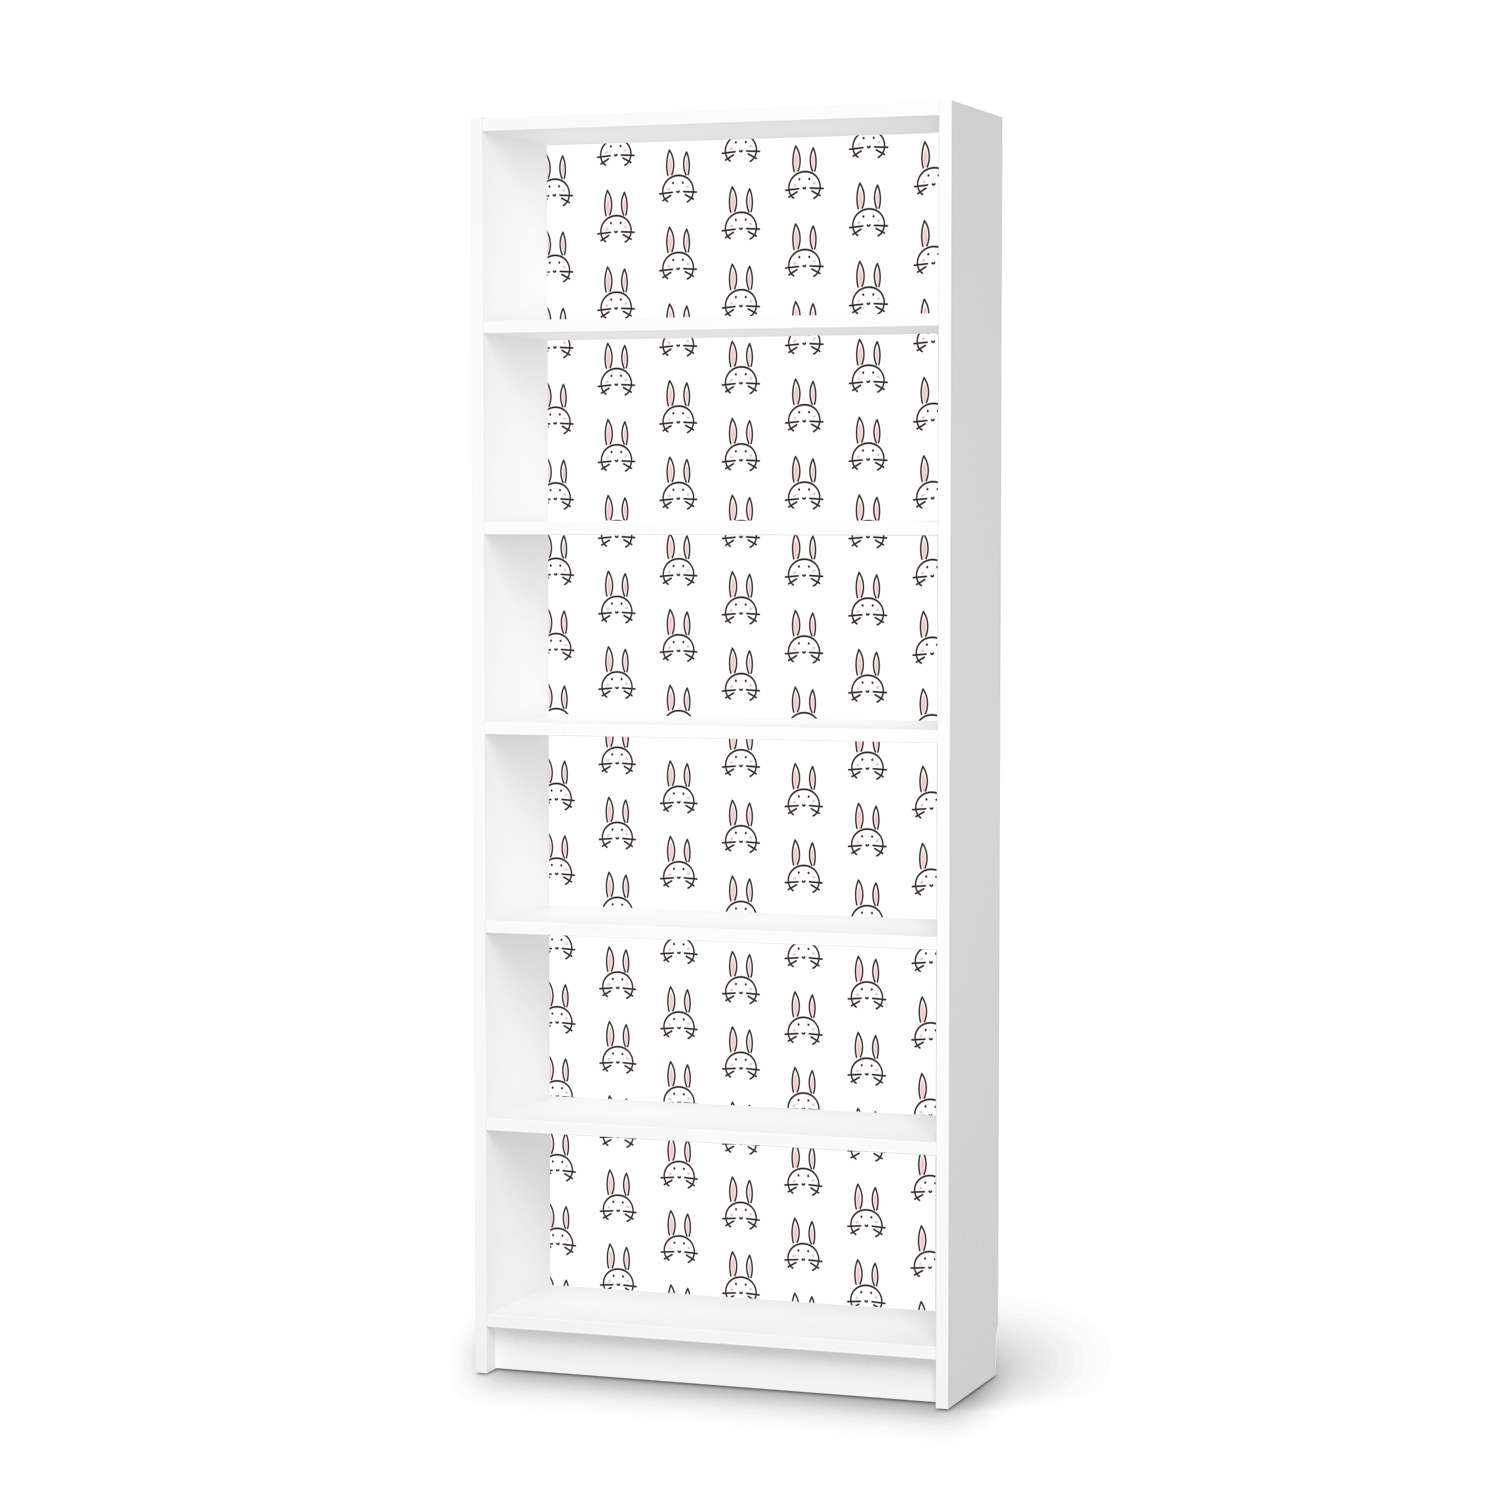 Klebefolie IKEA Billy Regal 6 F?cher - Design: Hoppel von creatisto